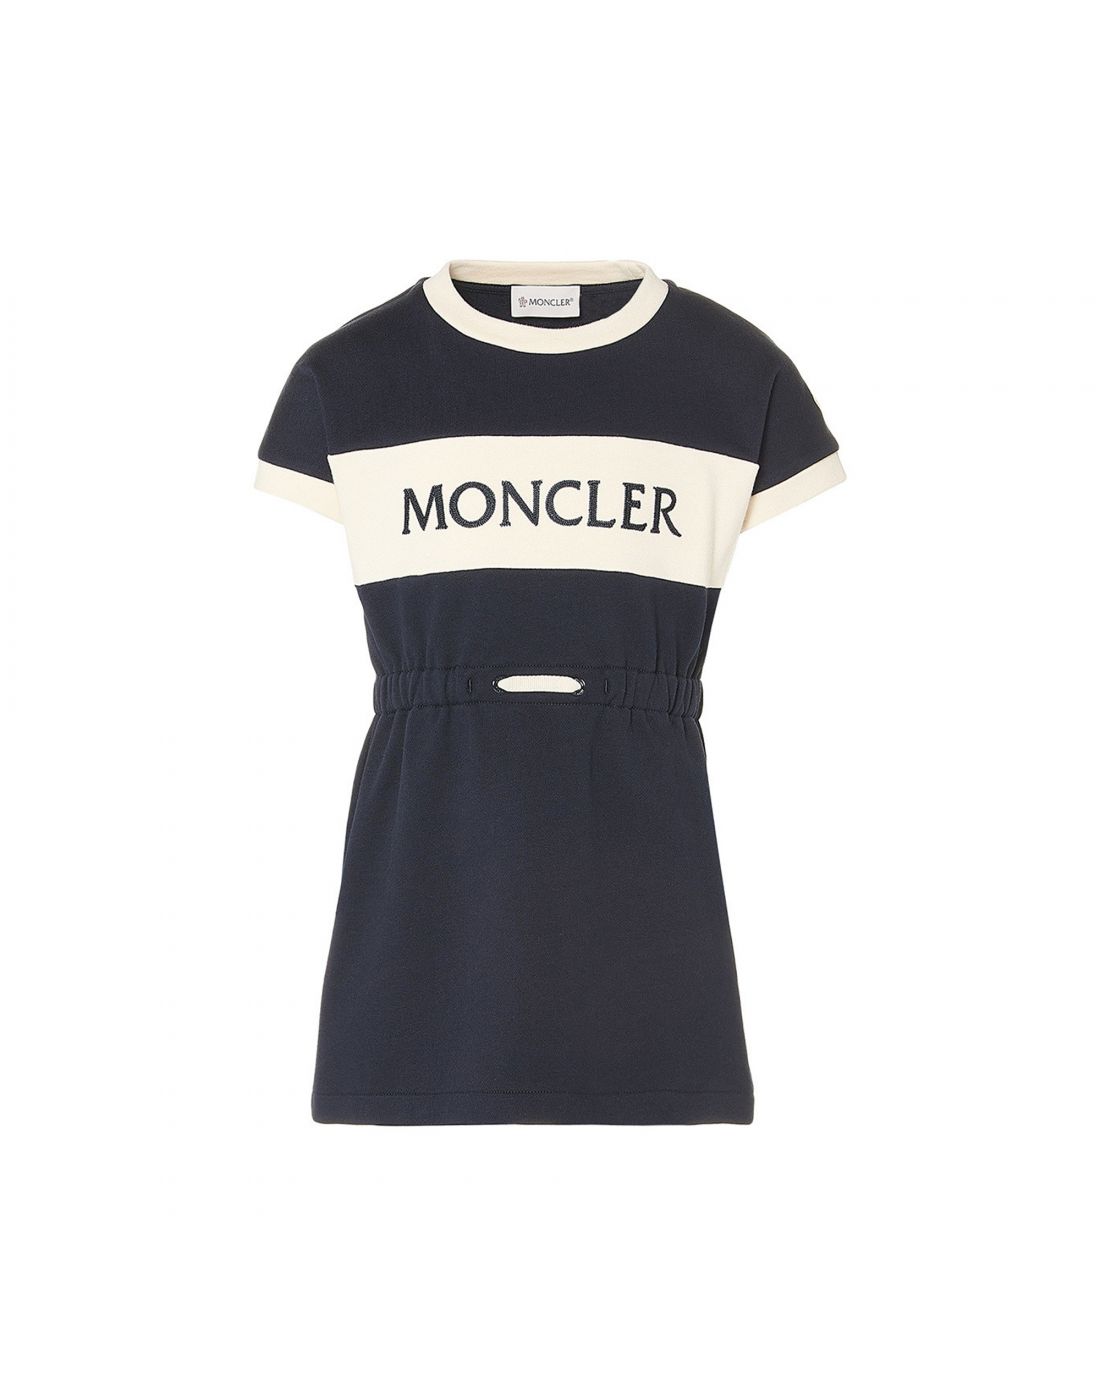 Moncler Girls Dress